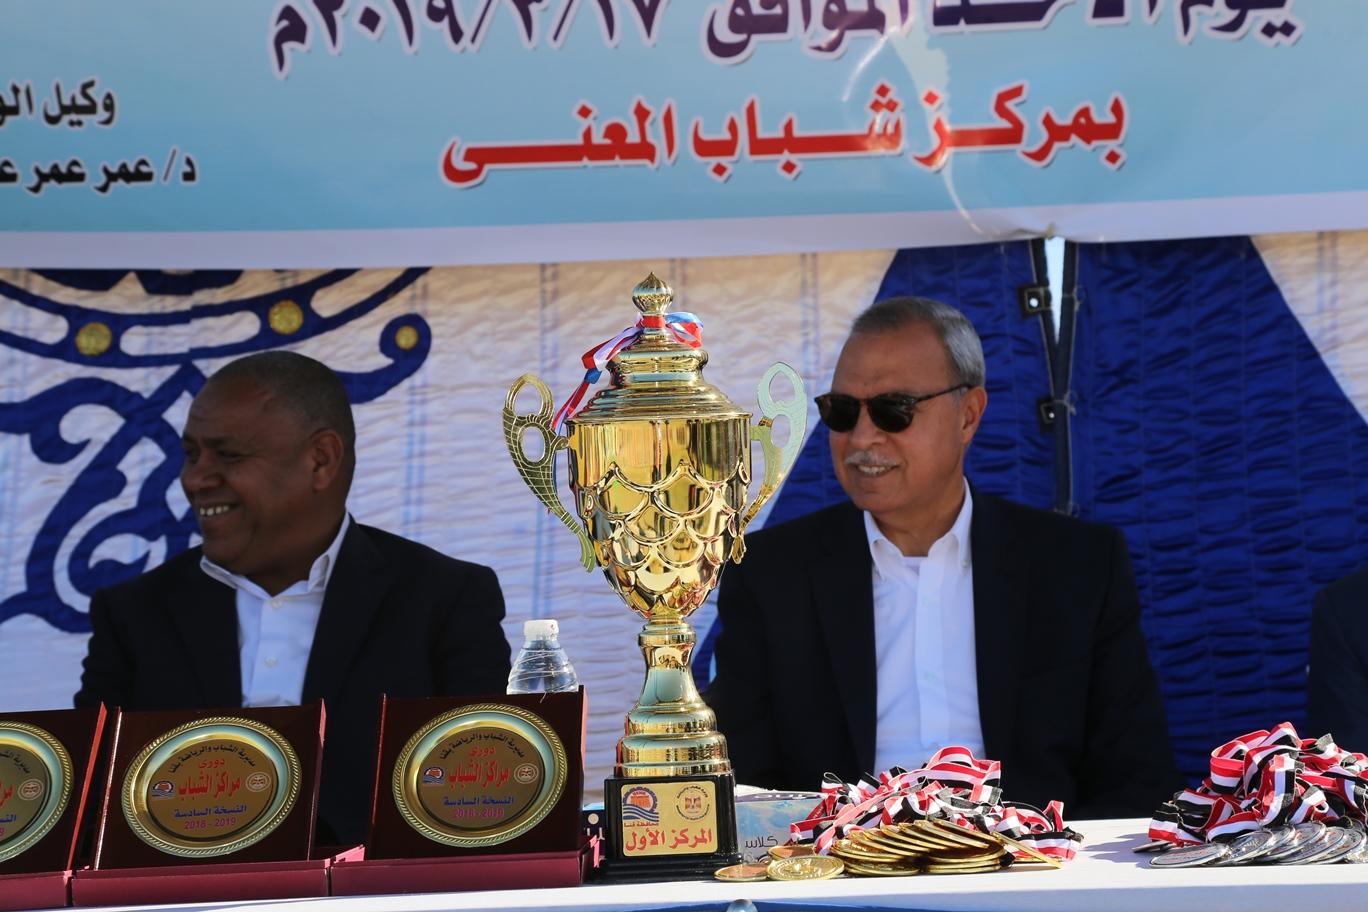   بالصور||الهجان يشهد المباراة النهائية لدوري مراكز الشباب بمحافظة قنا